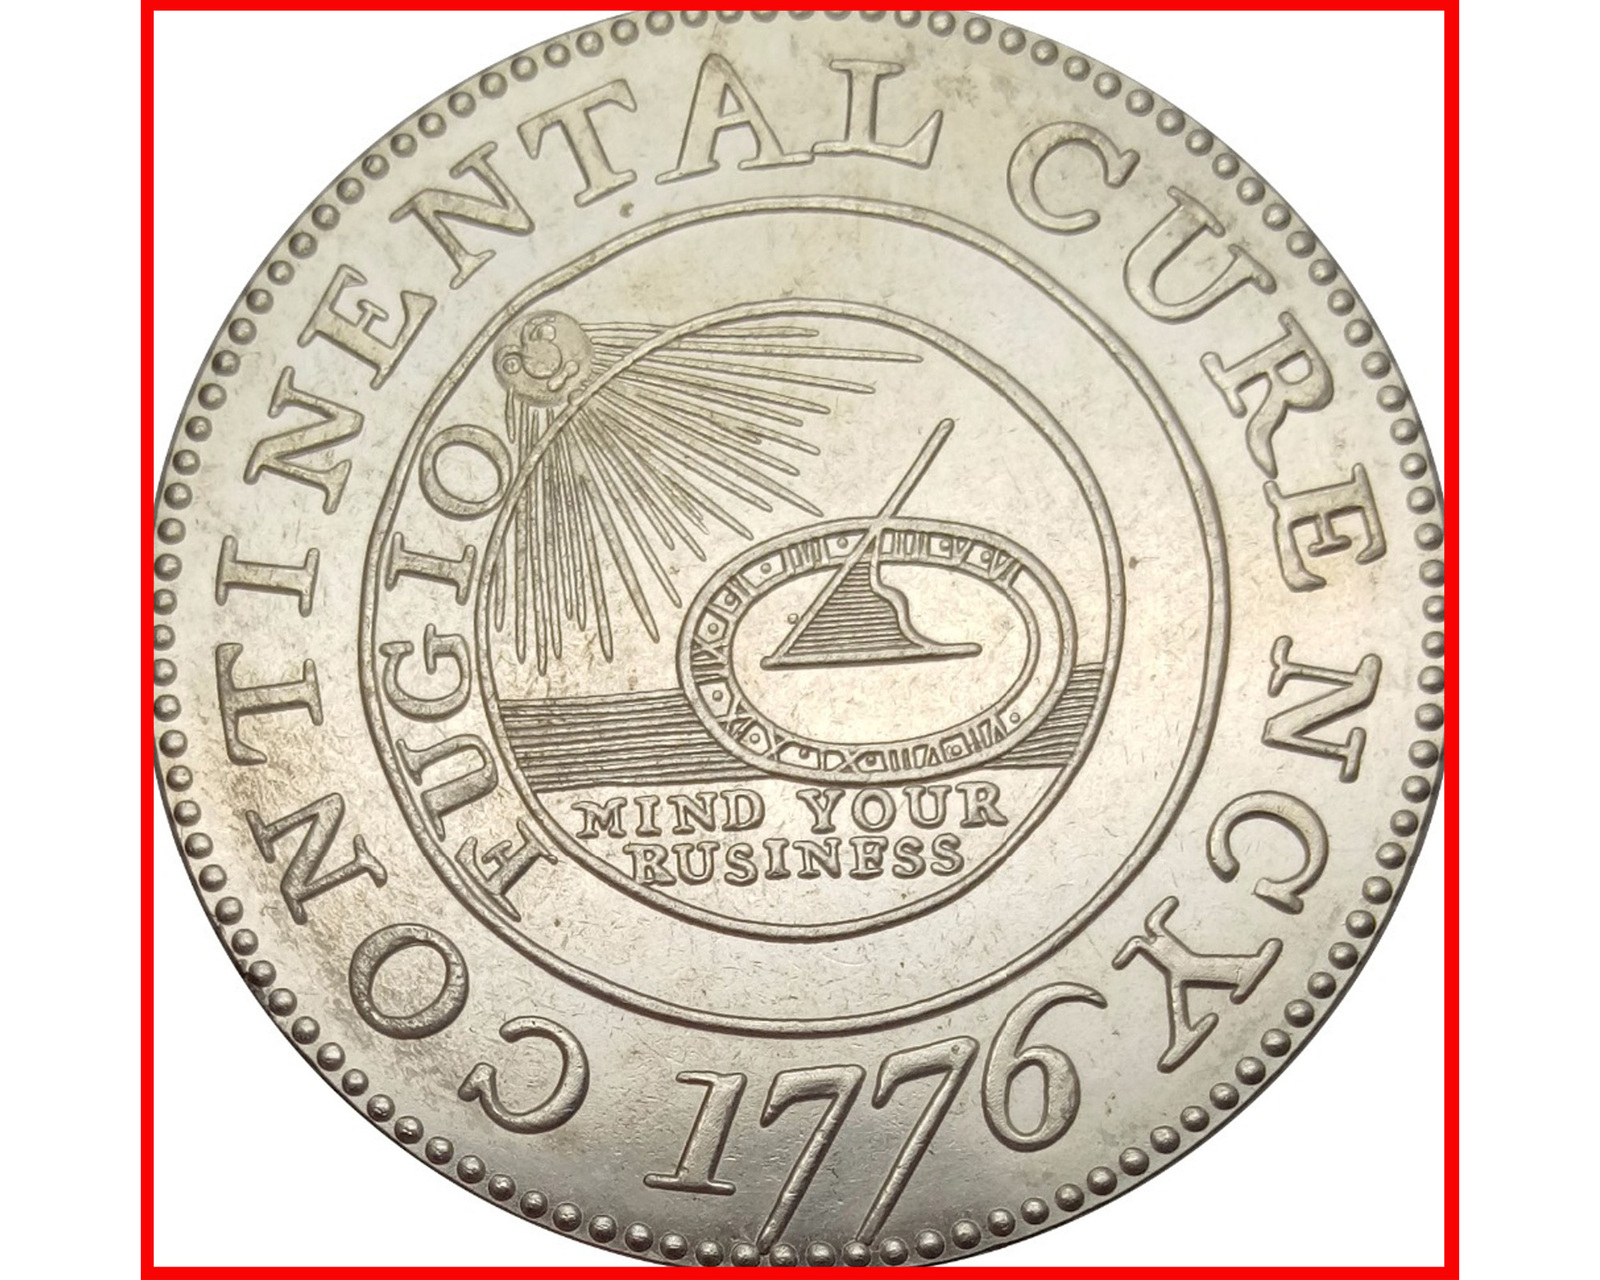 1776 coin crypto